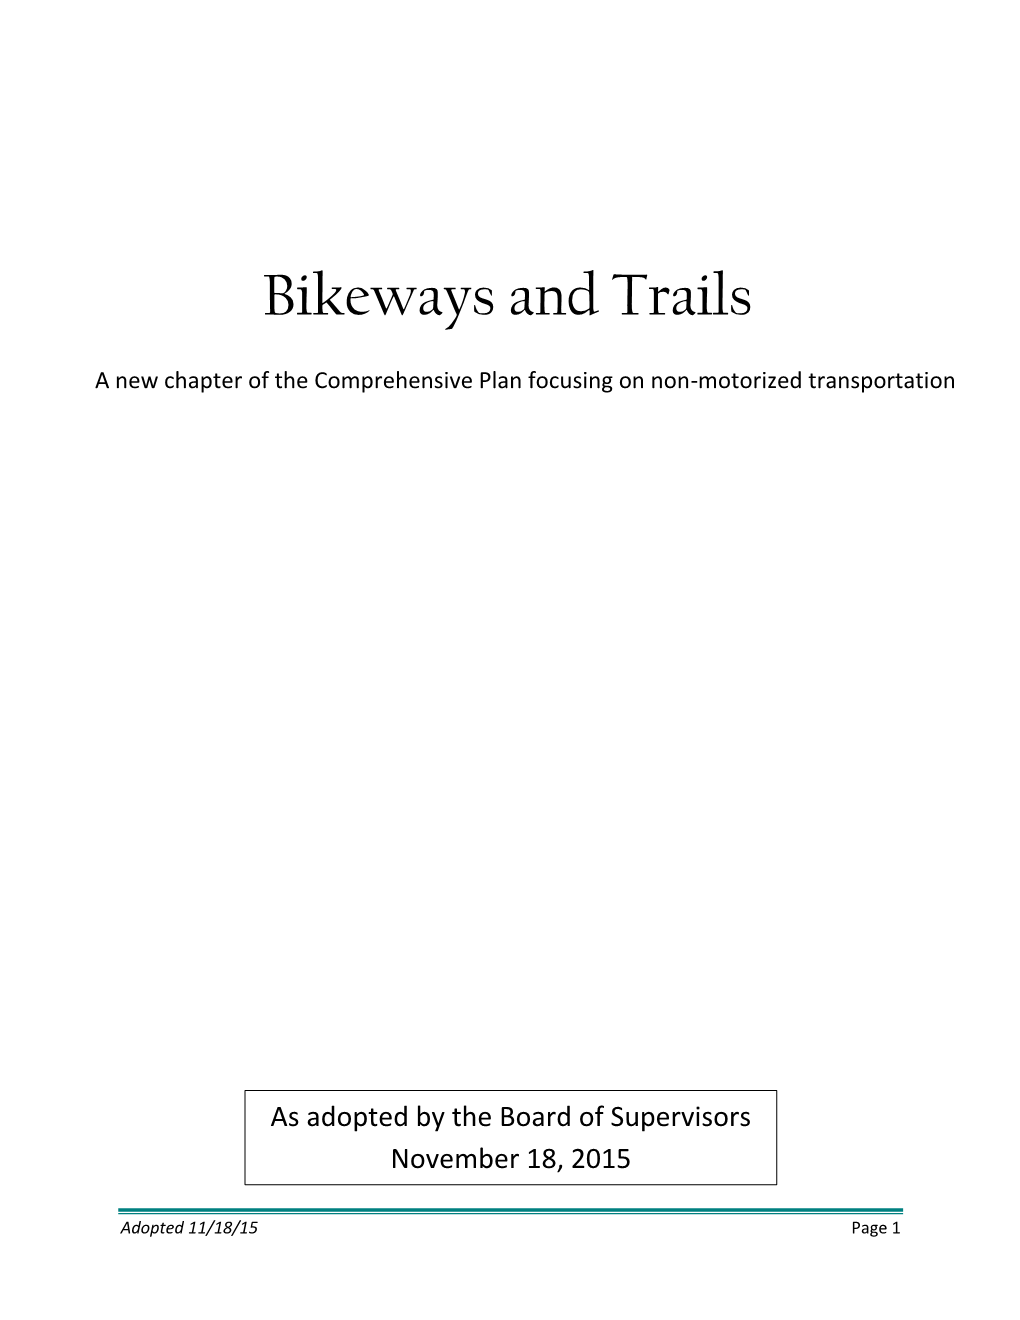 Bikeways and Trails Plan